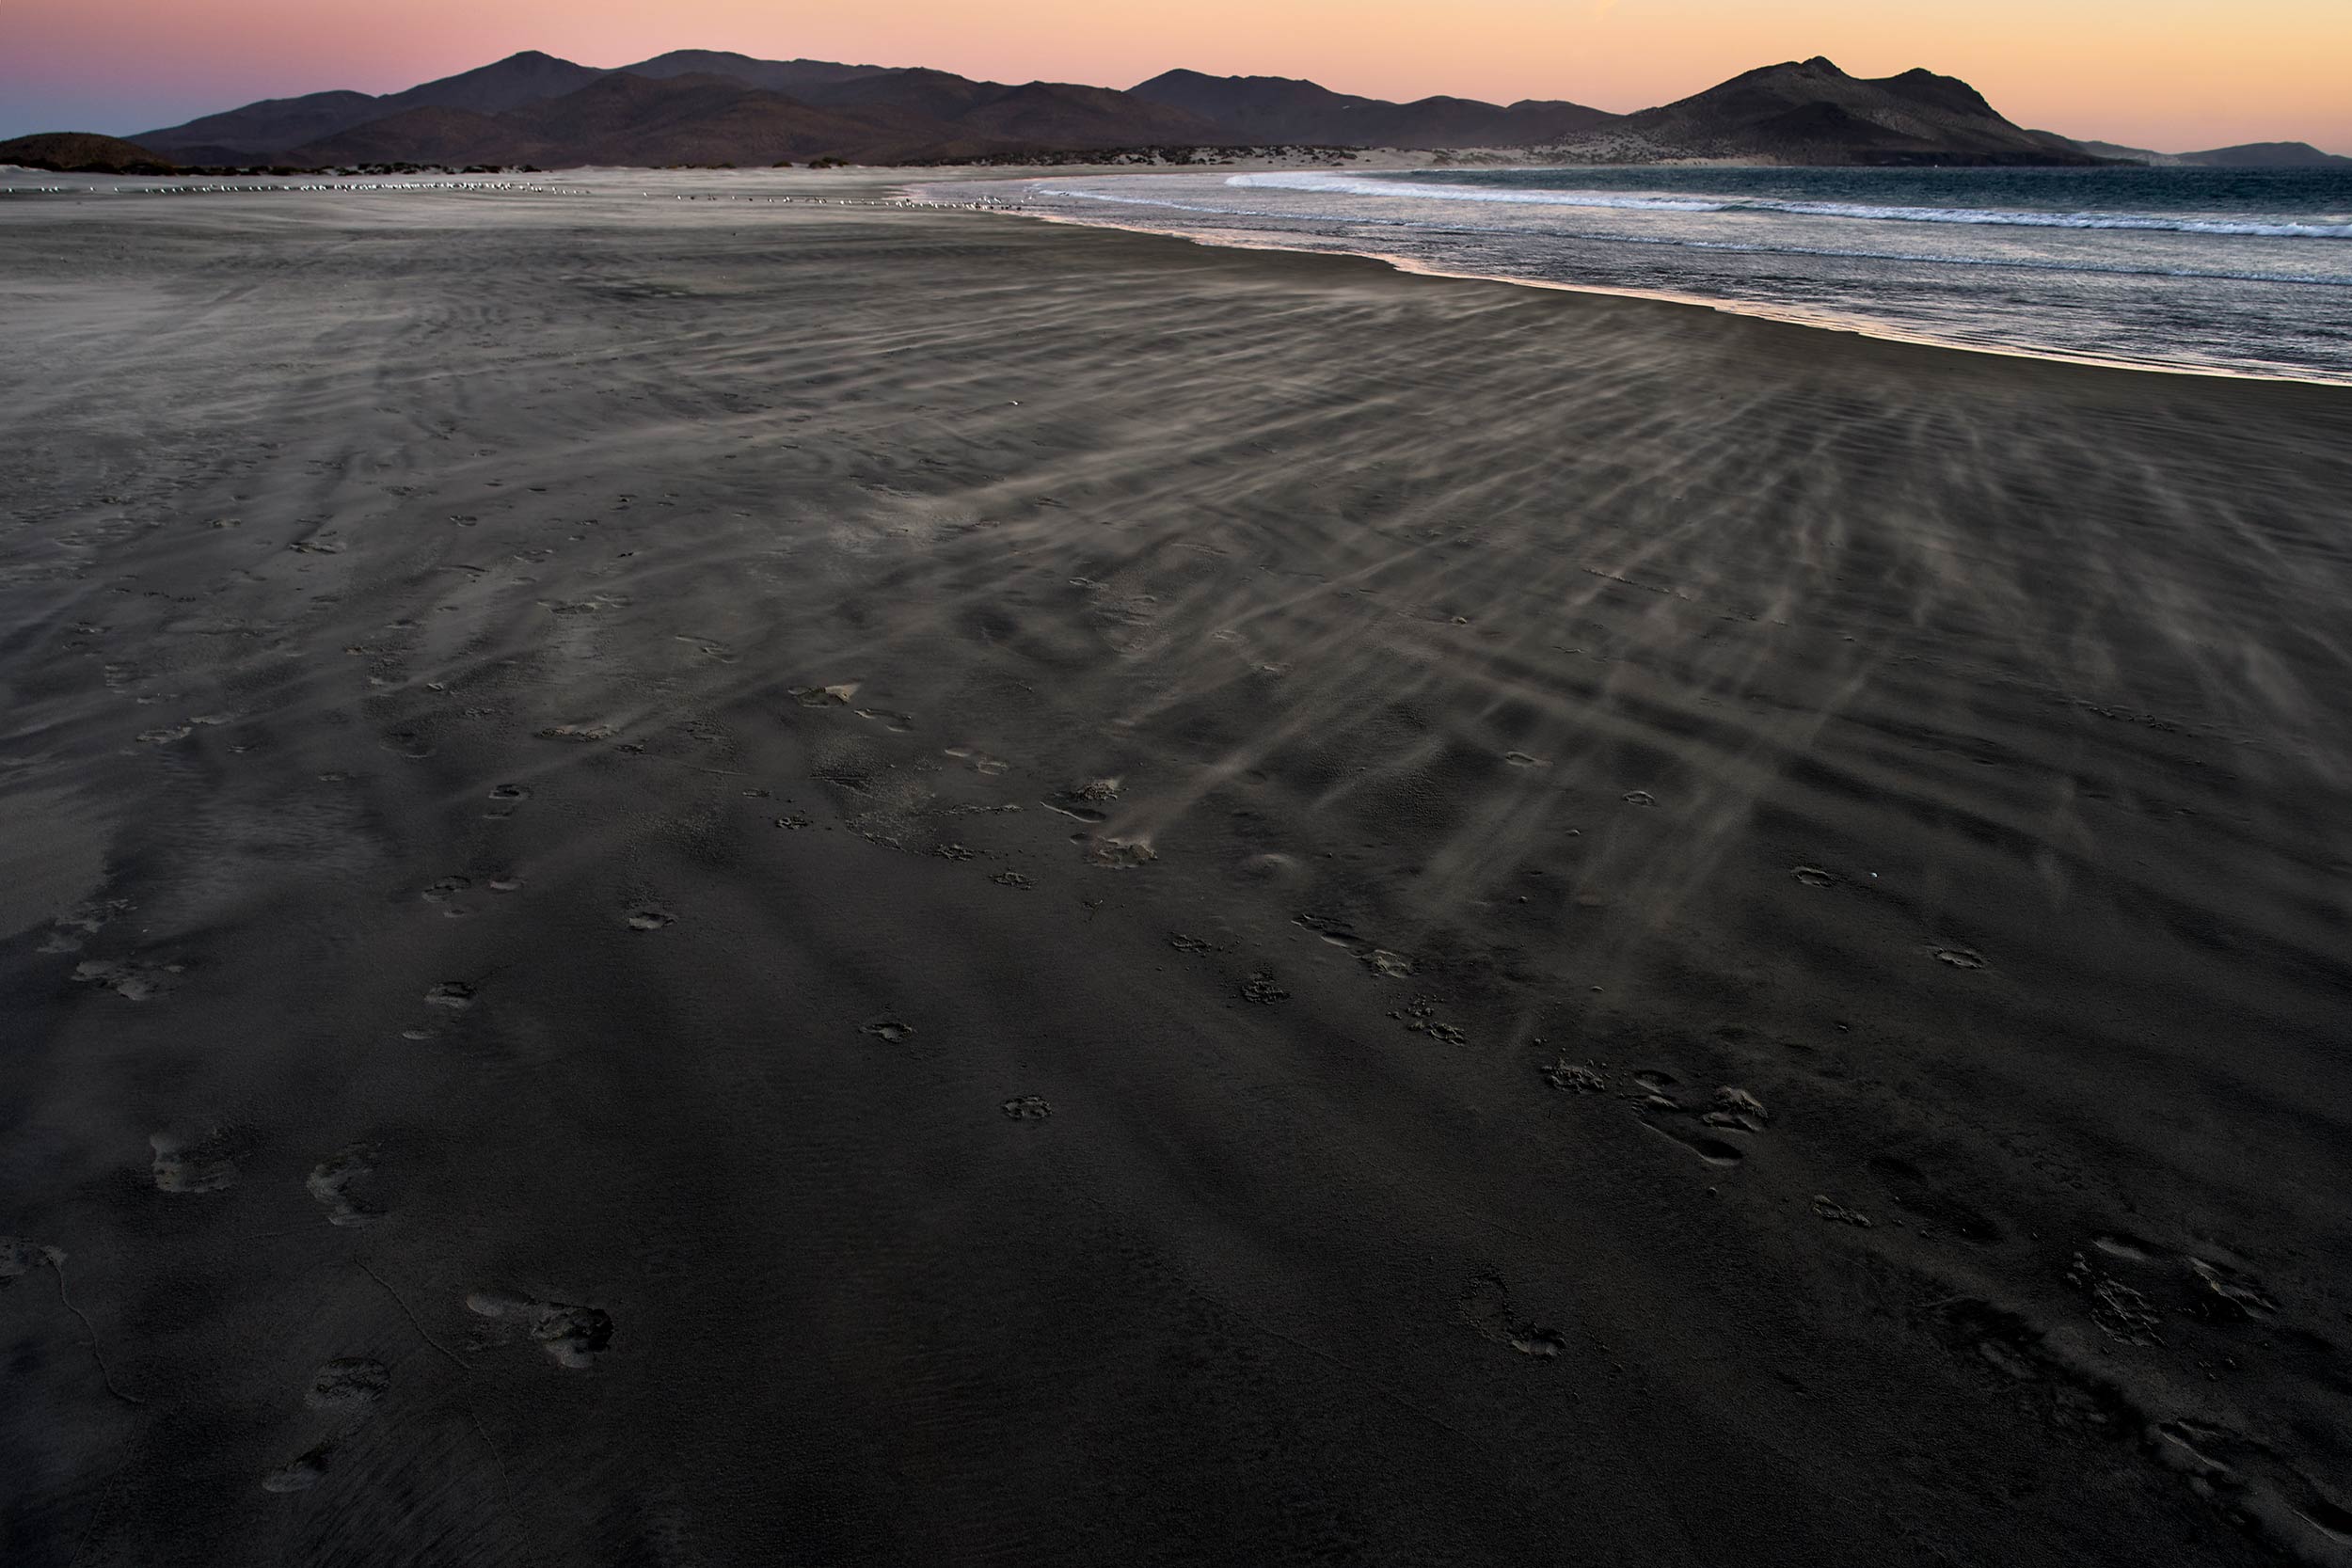 Baja_0010-sunset-sand